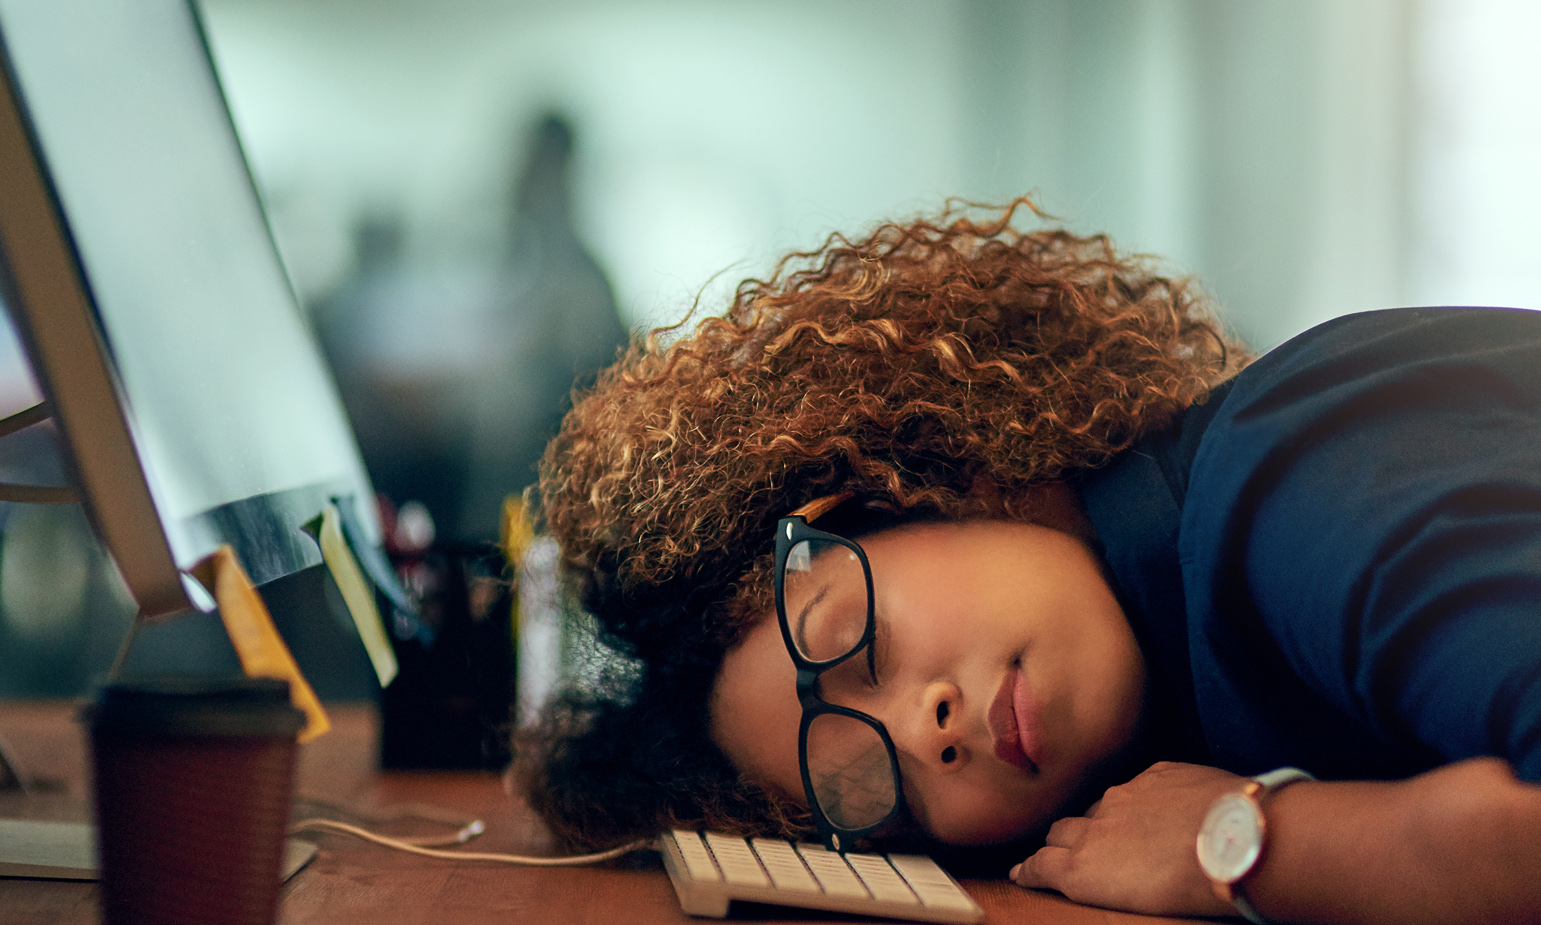 Woman asleep in front of computer, head resting on keyboard, eyeglasses askew